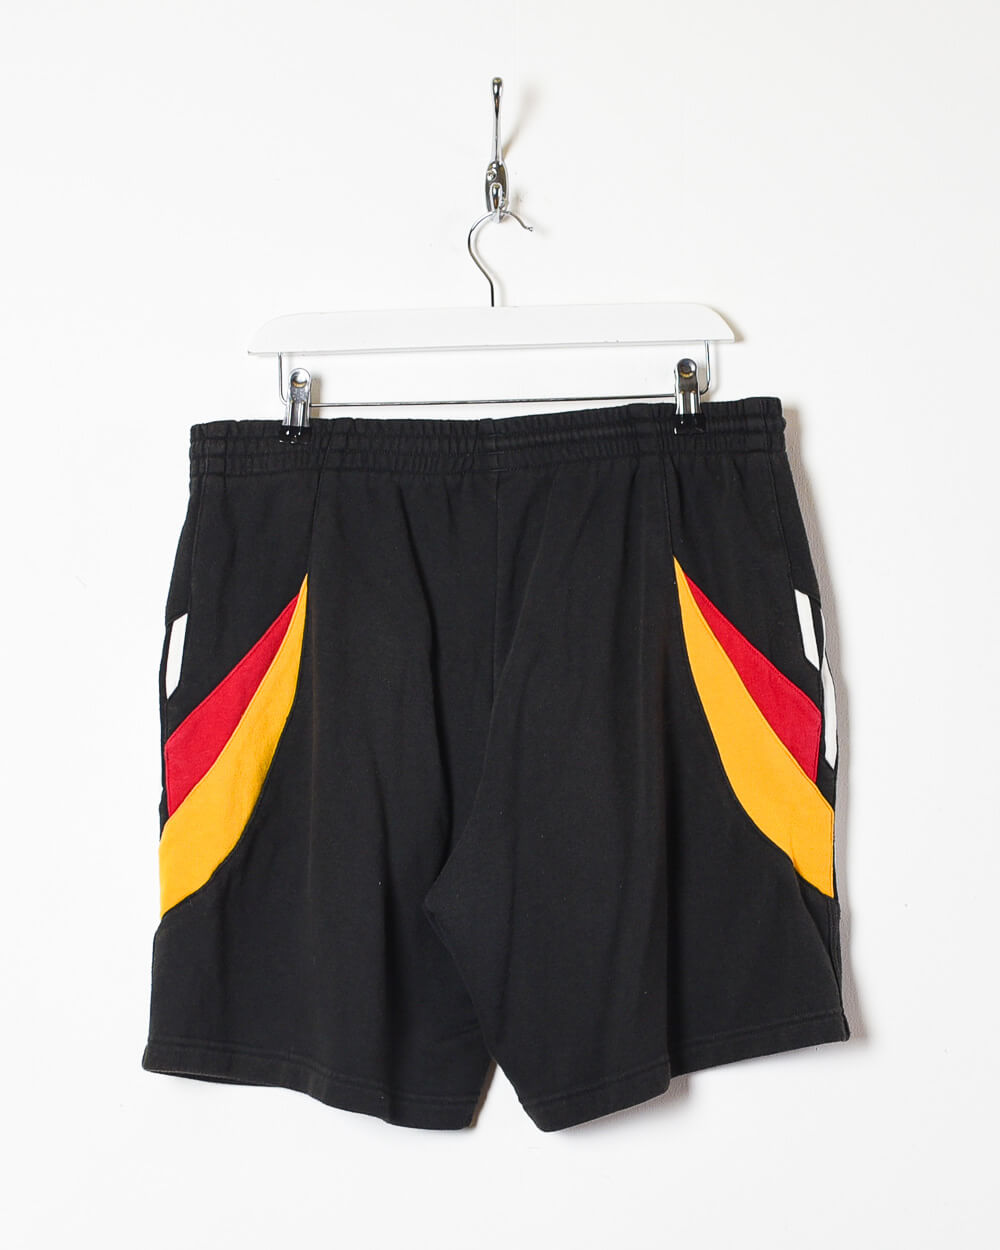 Black Adidas 90s Germany National Team Training Shorts - Large